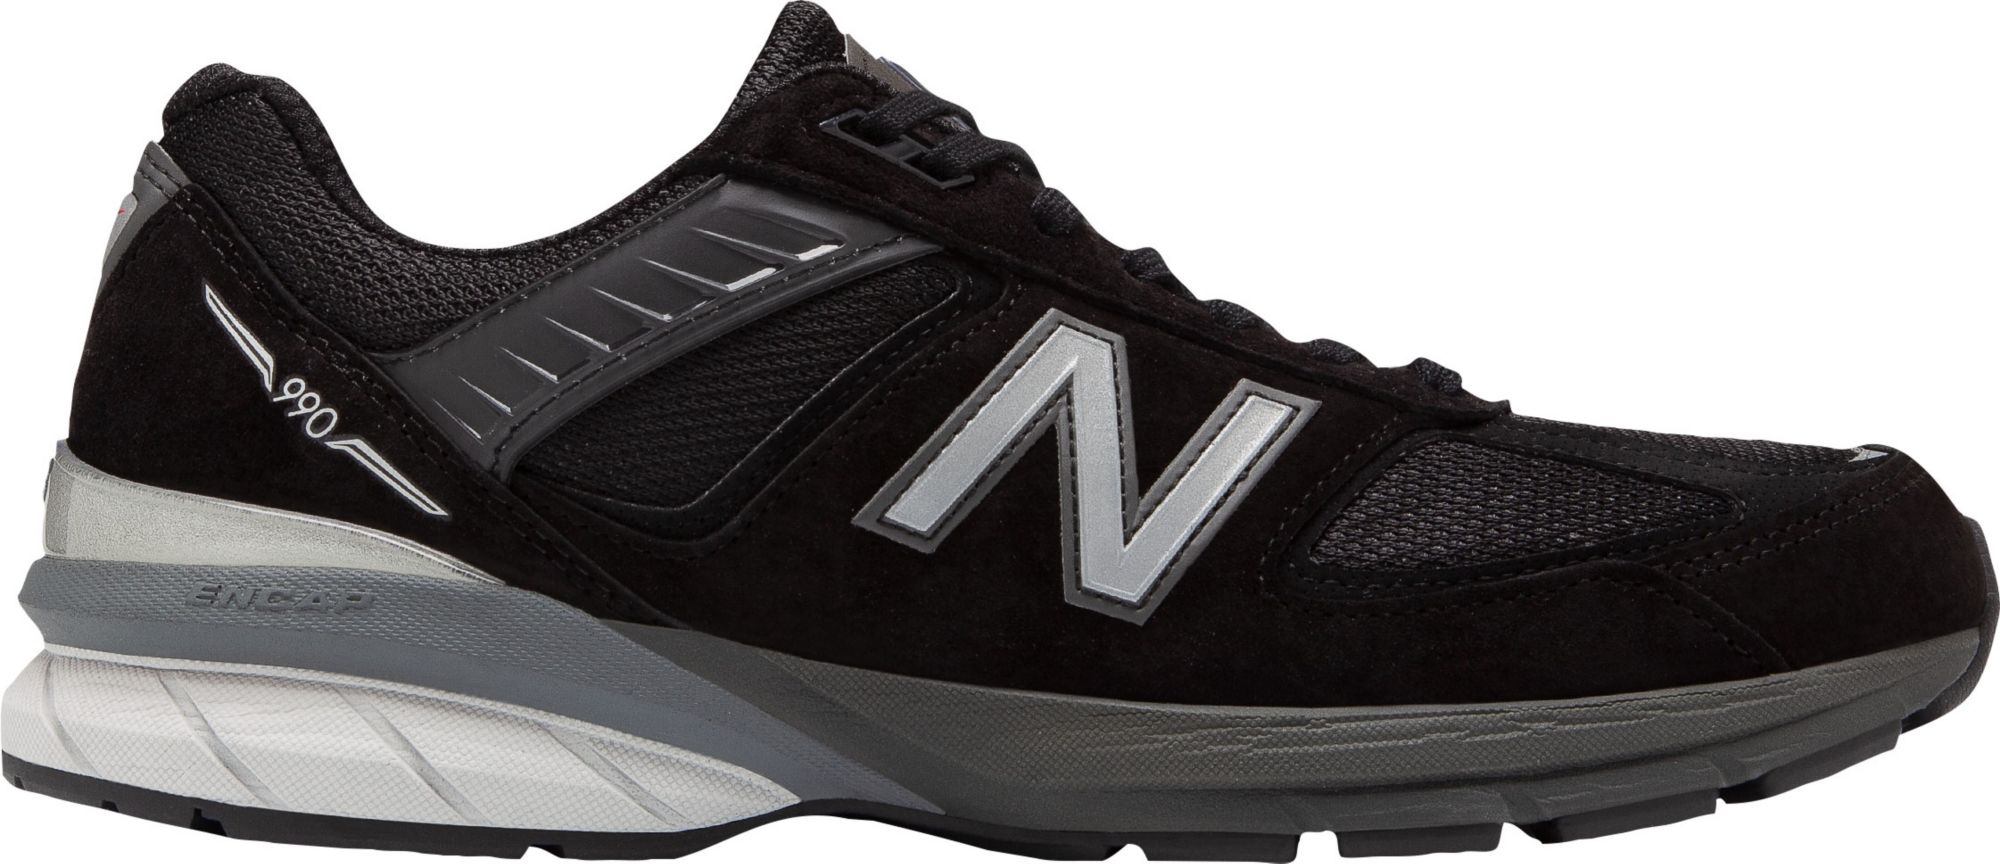 new balance men's m990v3 running shoe